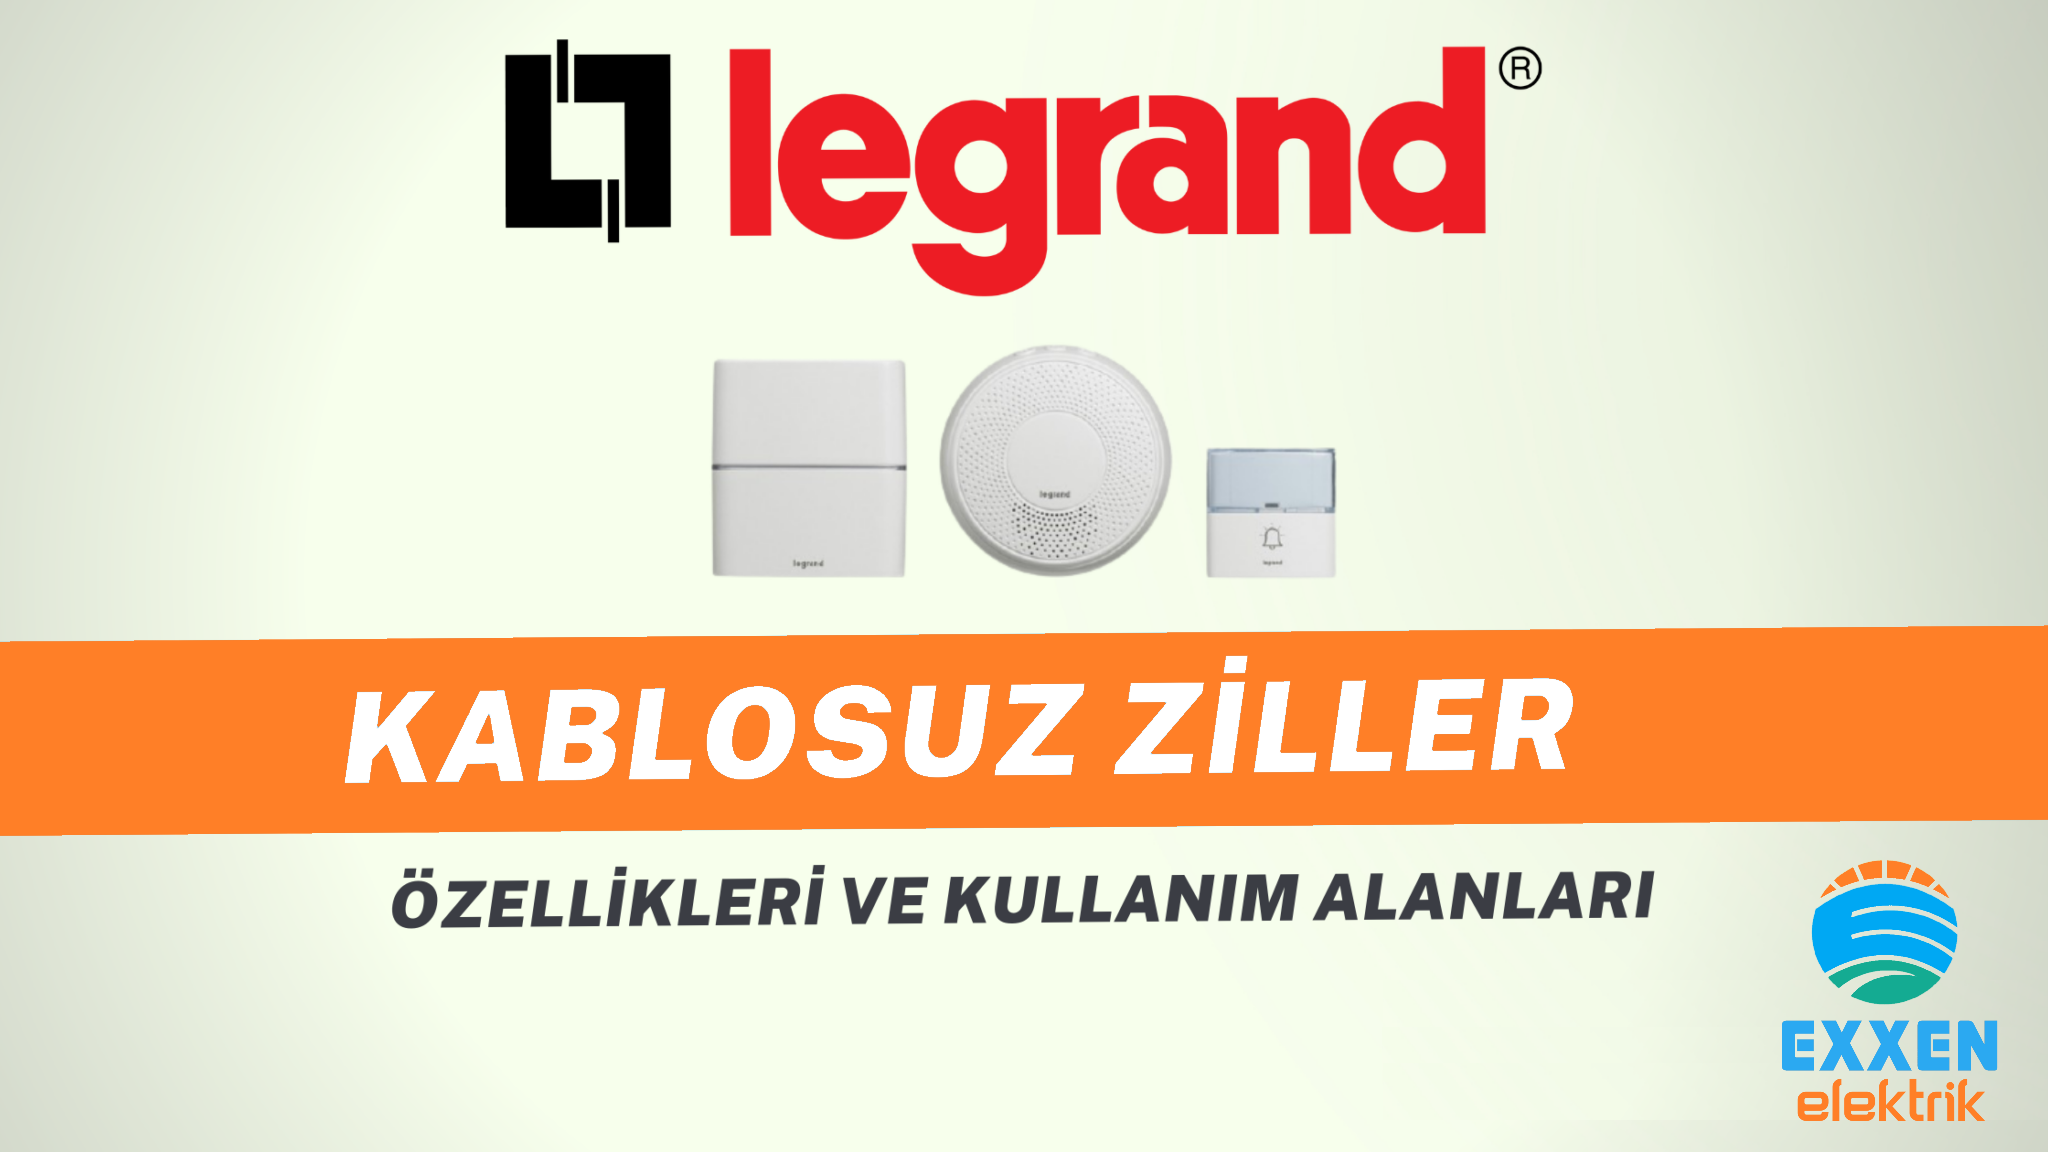 Legrand Kablosuz Ziller, Özellikleri ve Kullanım Alanları